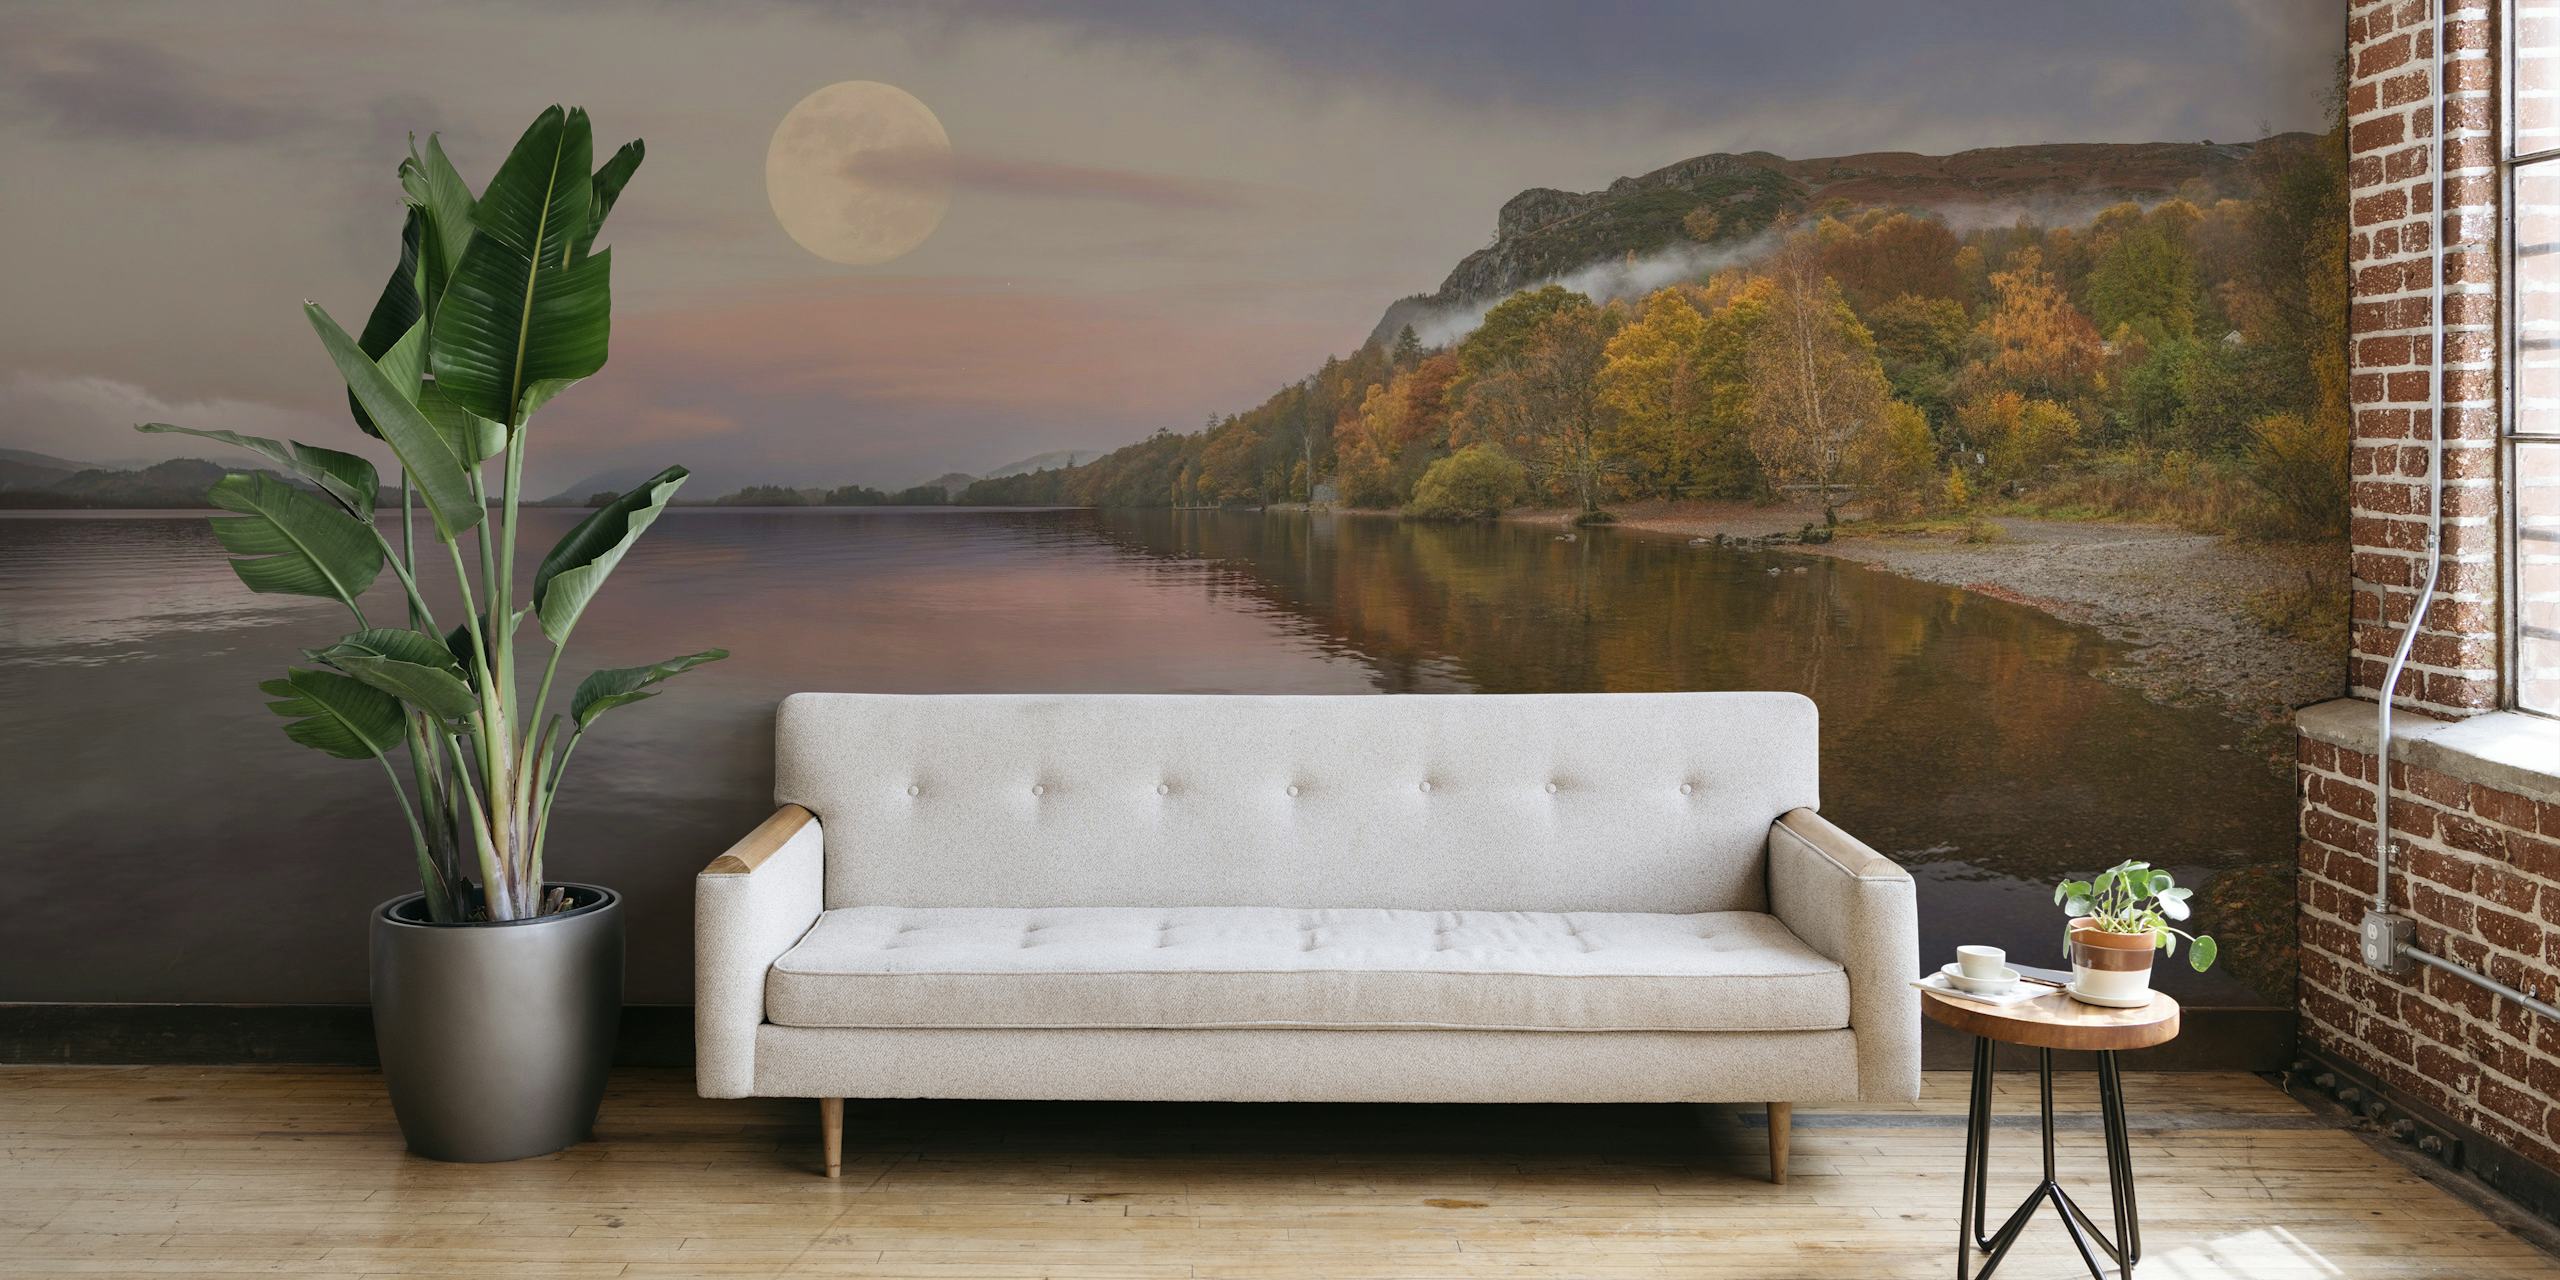 Mural del sereno lago Derwentwater con cielo iluminado por la luna y reflejos otoñales